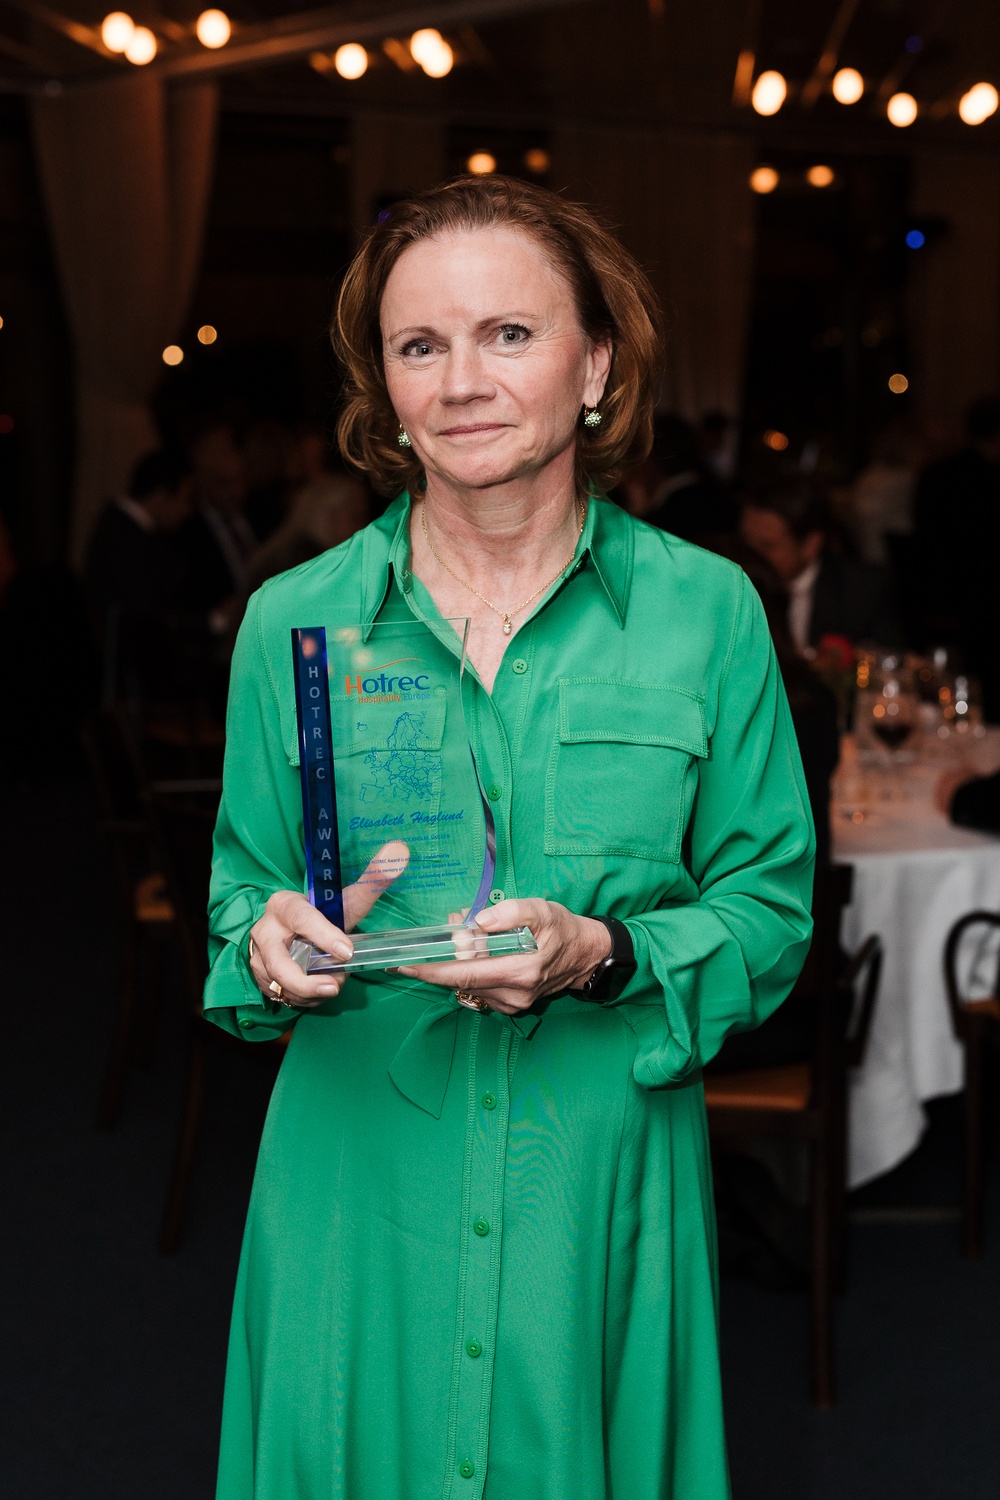 Elisabeth Haglund tilldelas HOTREC AWARD